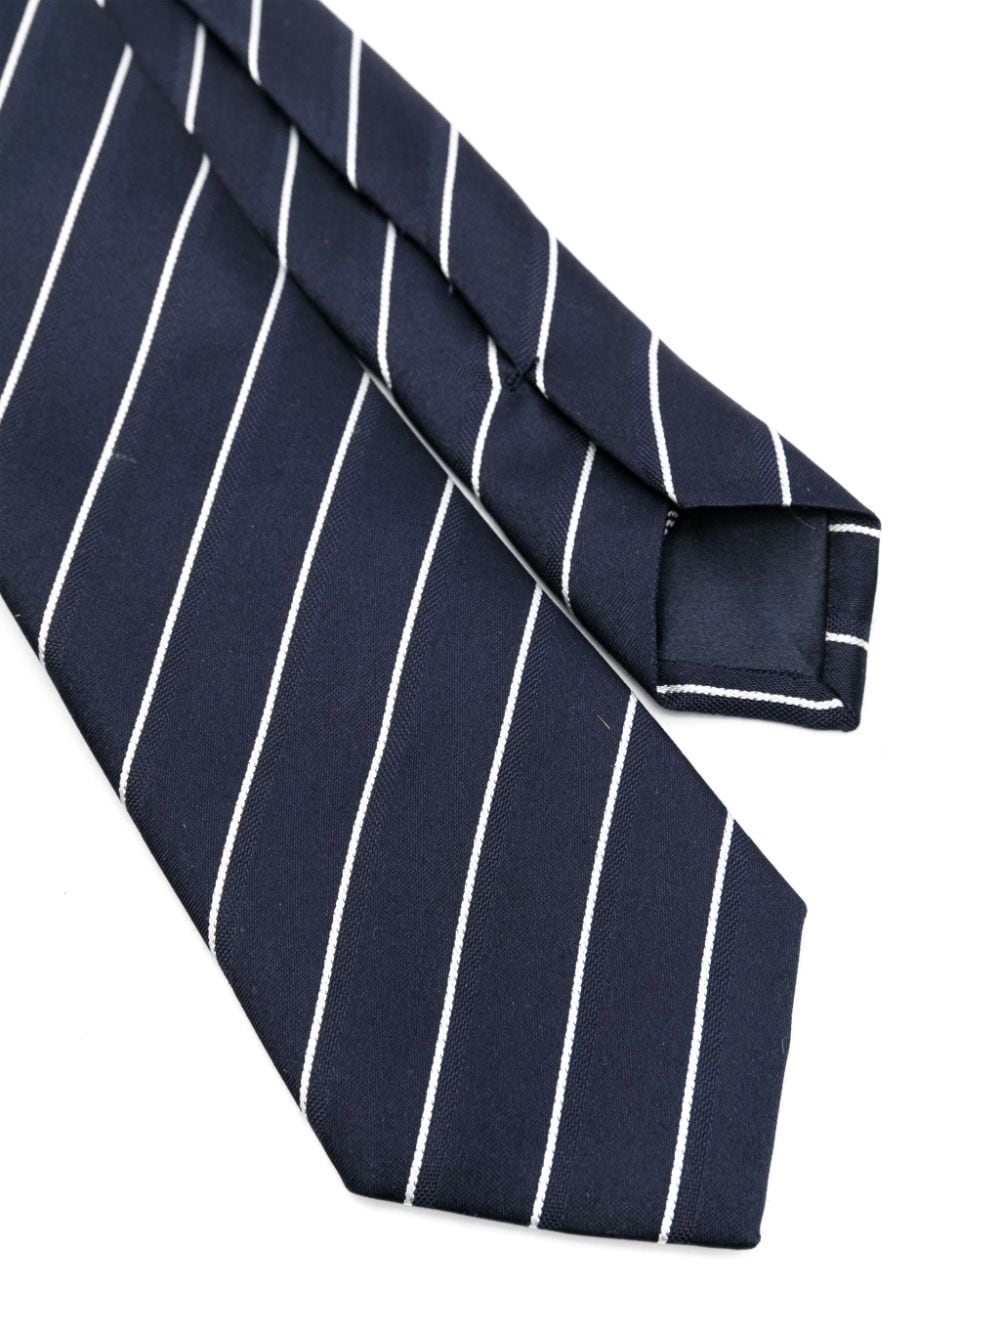 Giorgio Armani striped silk tie - Blauw